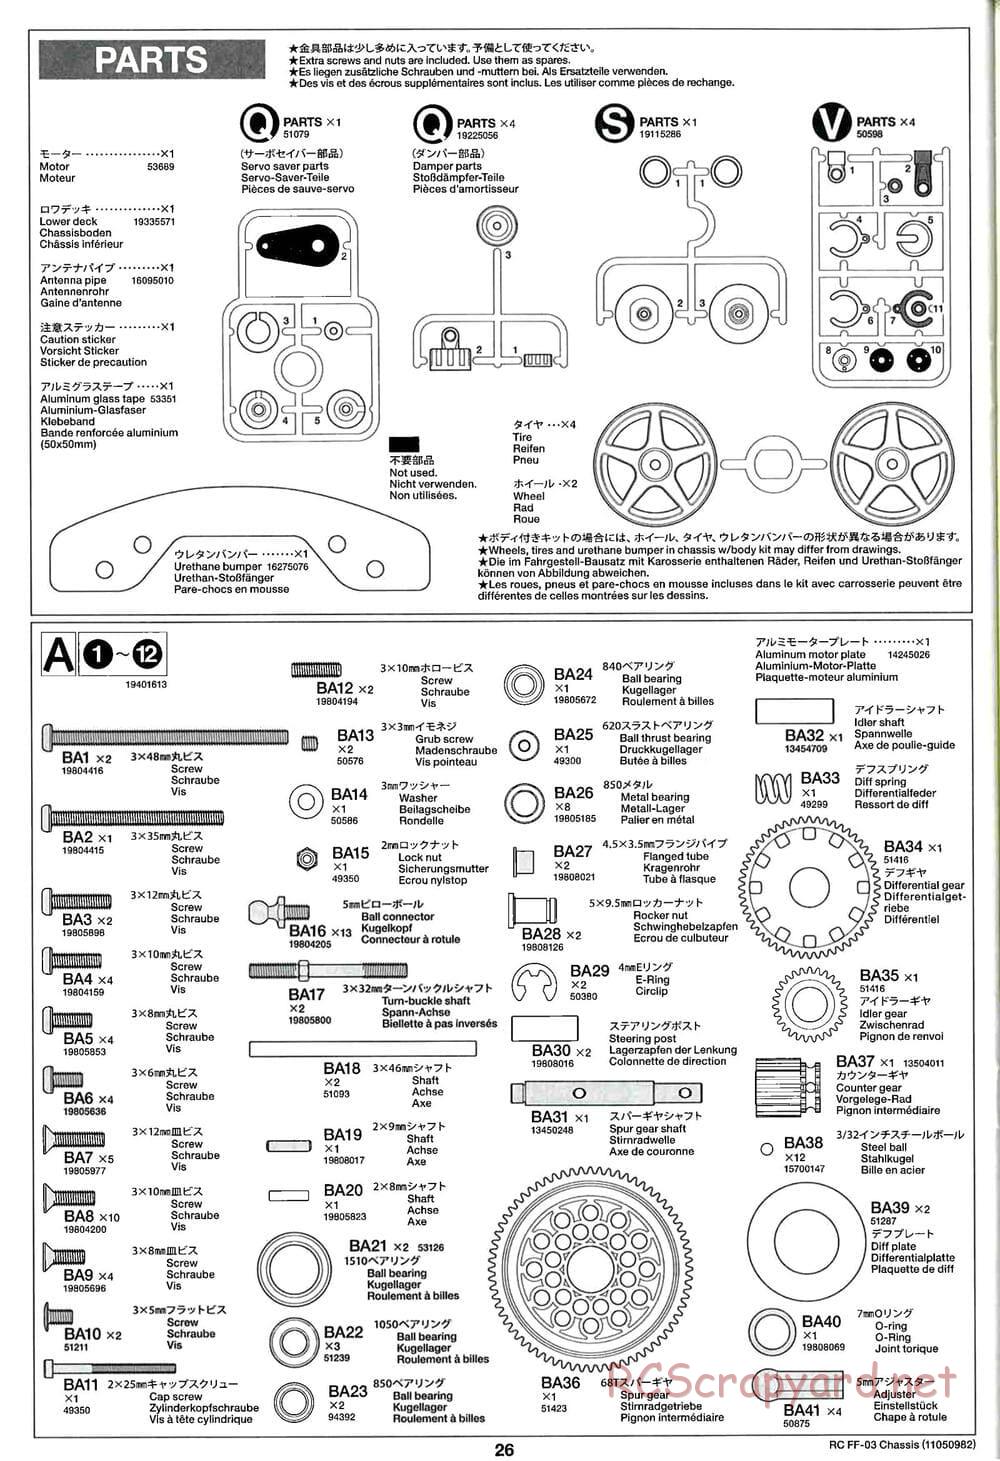 Tamiya - Honda Accord Aero Custom - FF-03 Chassis - Manual - Page 26